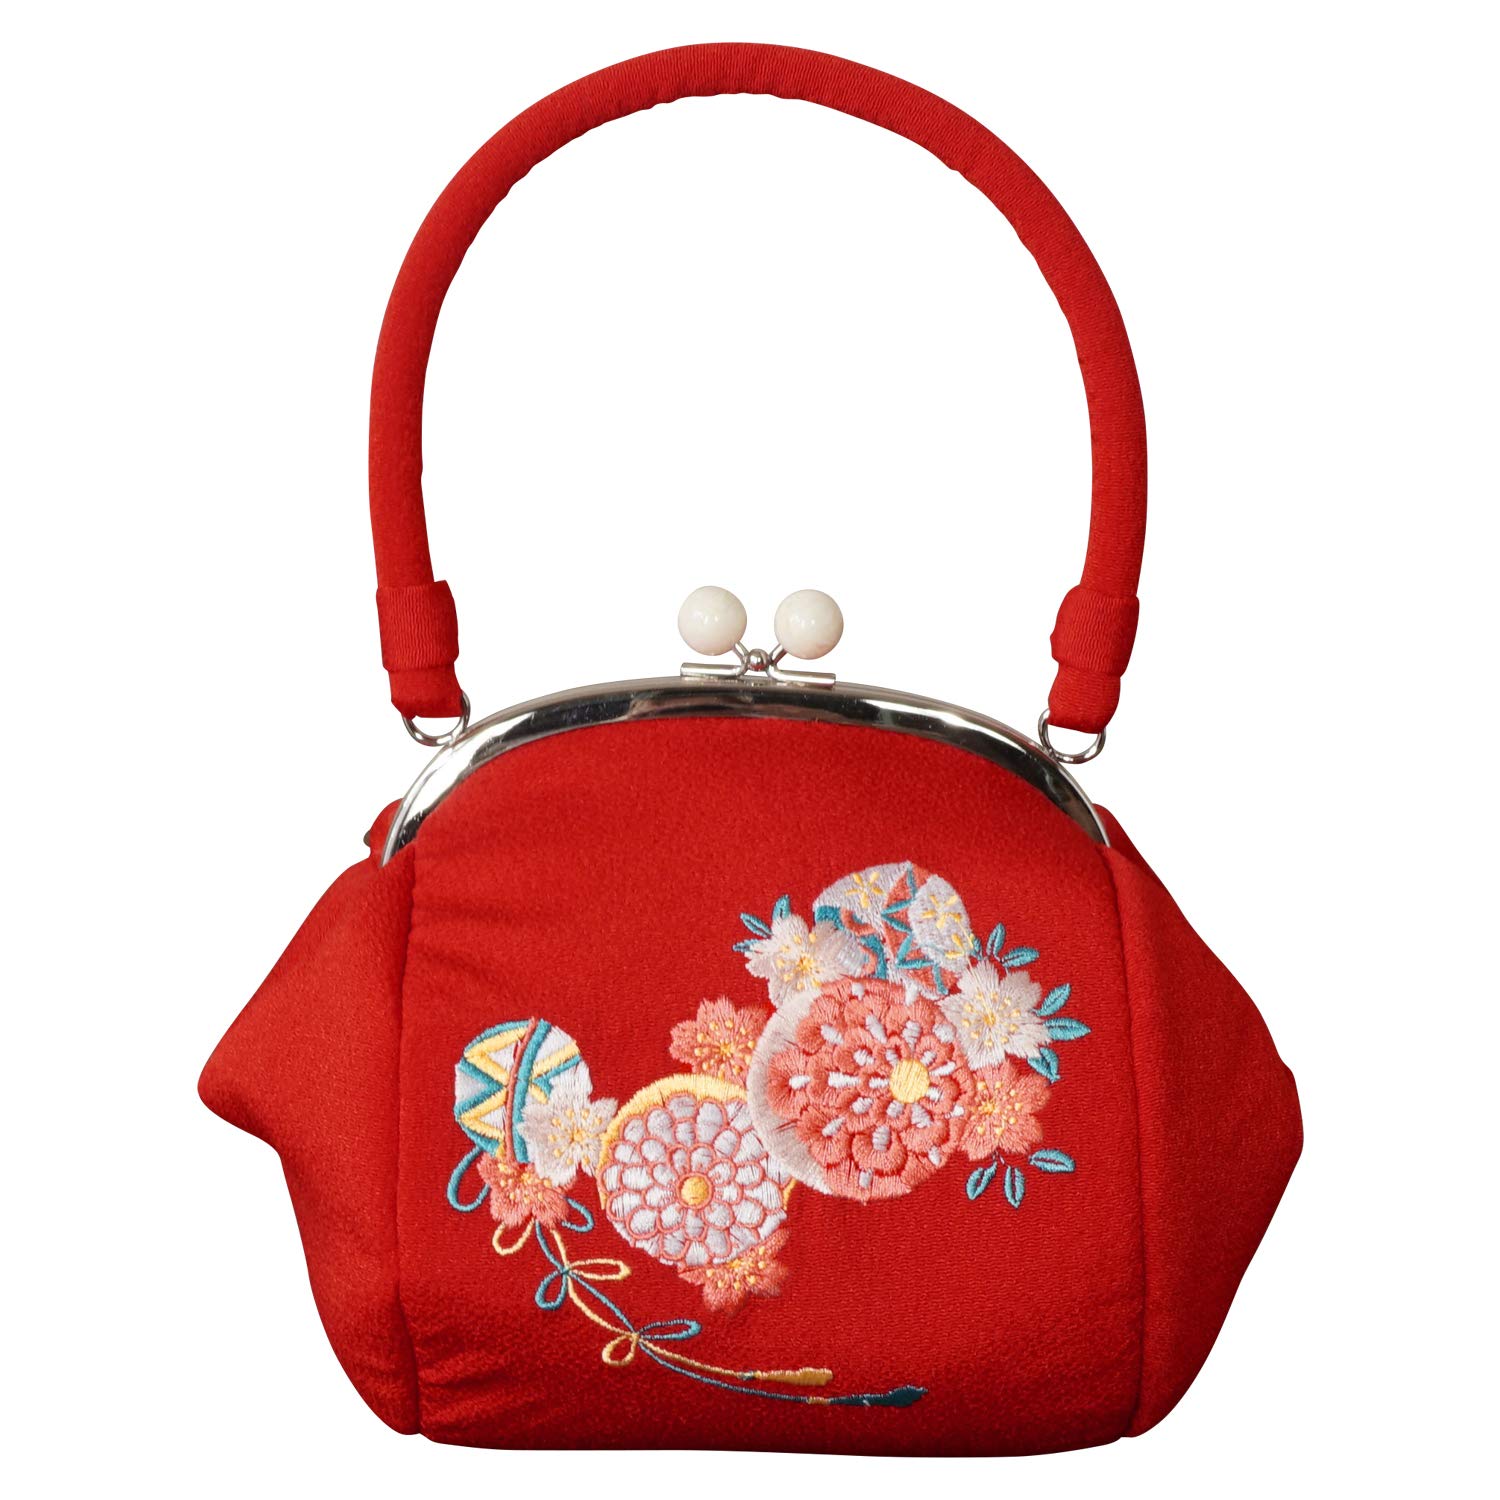 振袖 バッグ 単品 がま口 丸型 丸い たっぷり収納 選べる3色 毬 桜 赤 